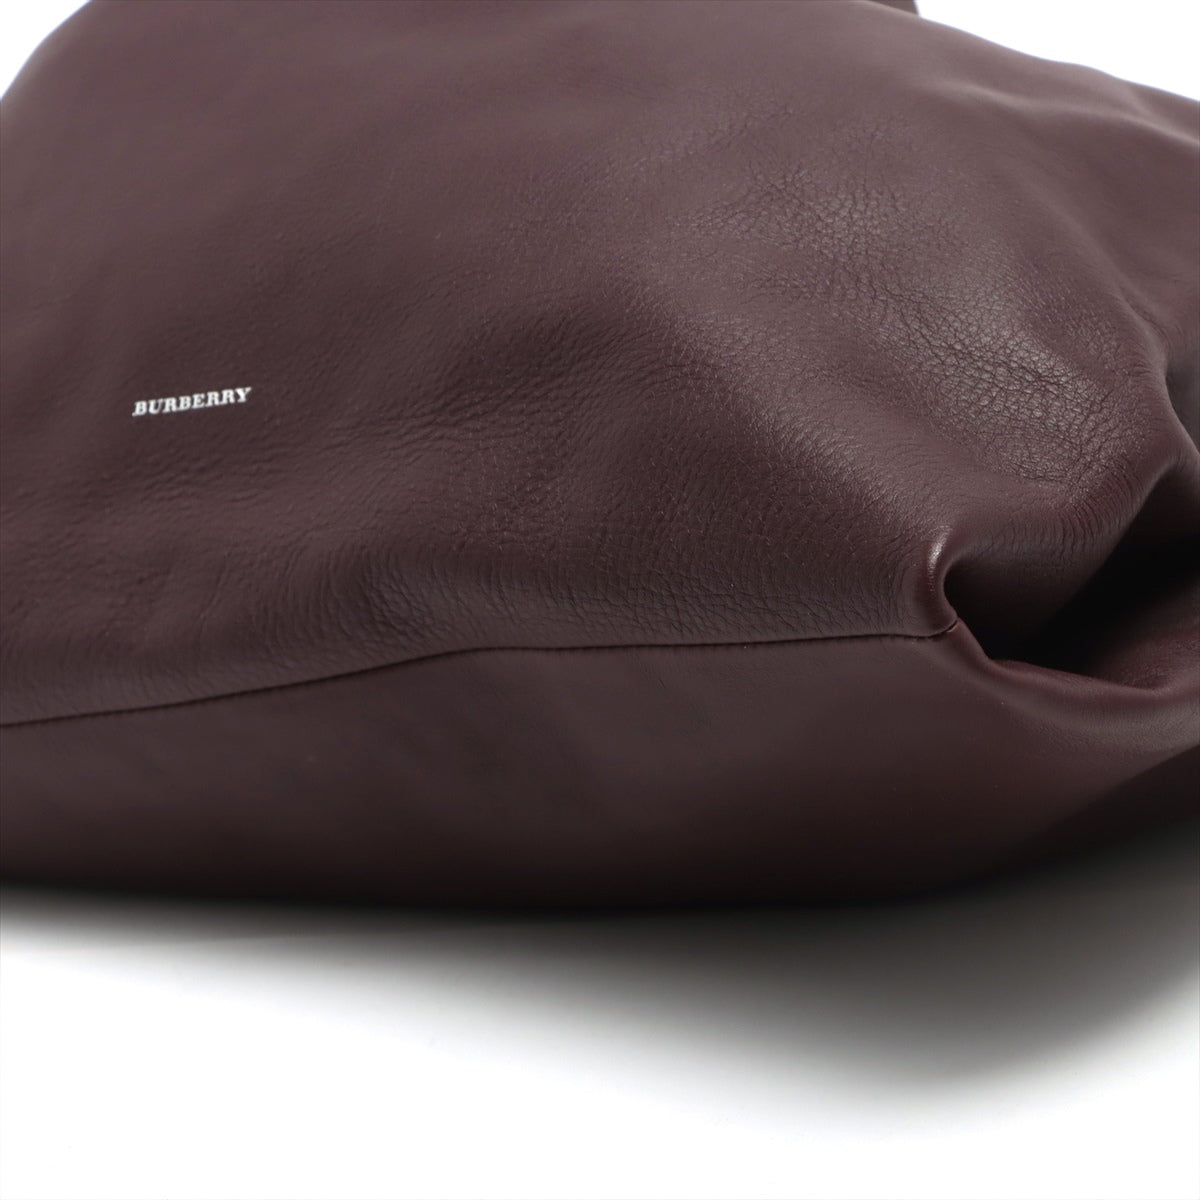 Burberry Leather Shoulder bag Bordeaux